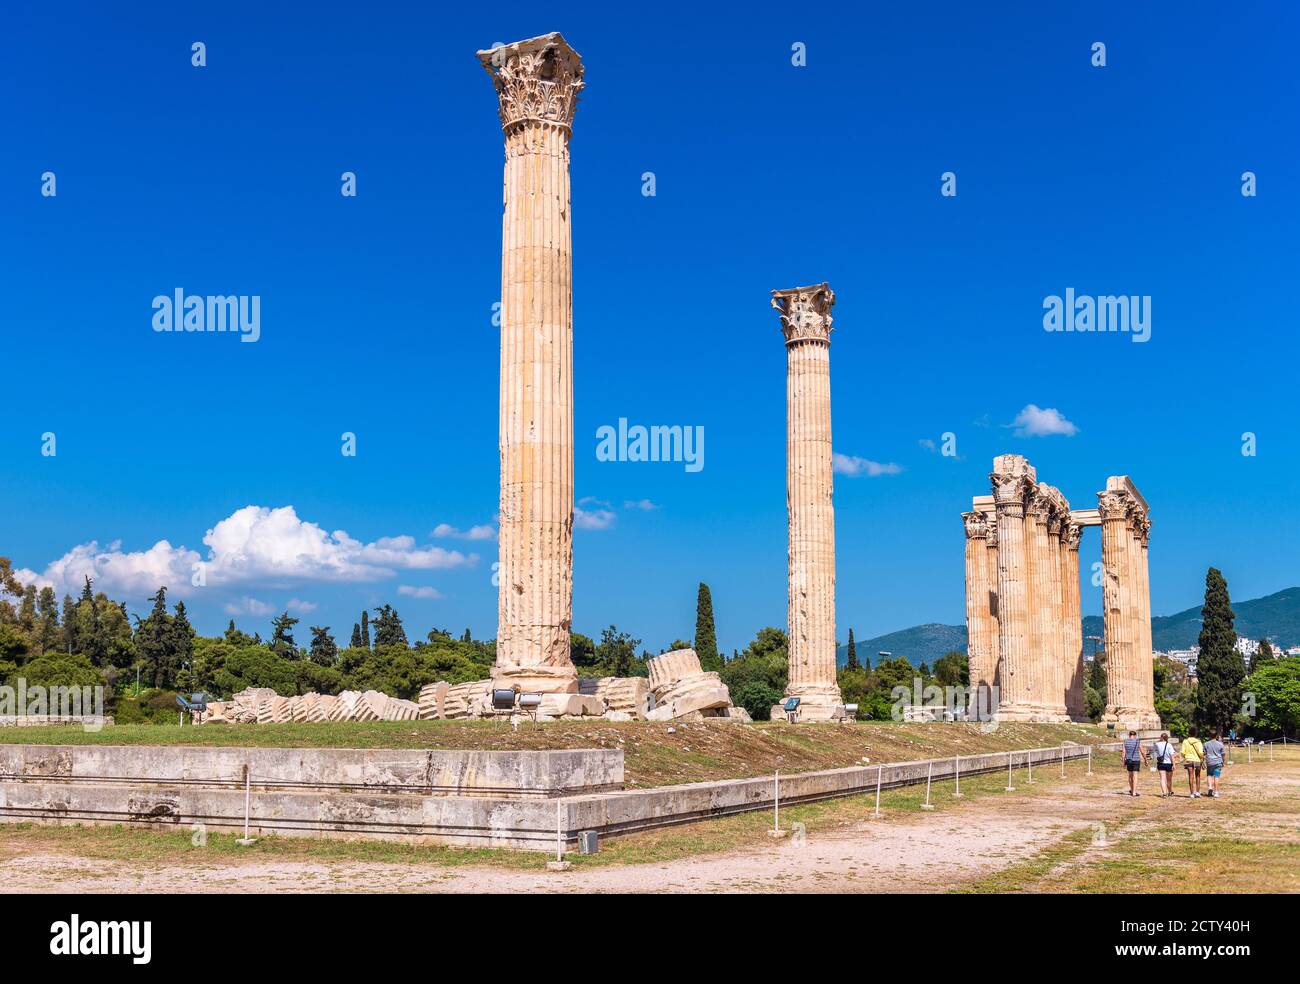 Tempio di Zeus con colonne cadute, Atene, Grecia. E' un'attrazione turistica di Atene. Vista panoramica delle classiche rovine greche nel centro di Atene. Remai Foto Stock